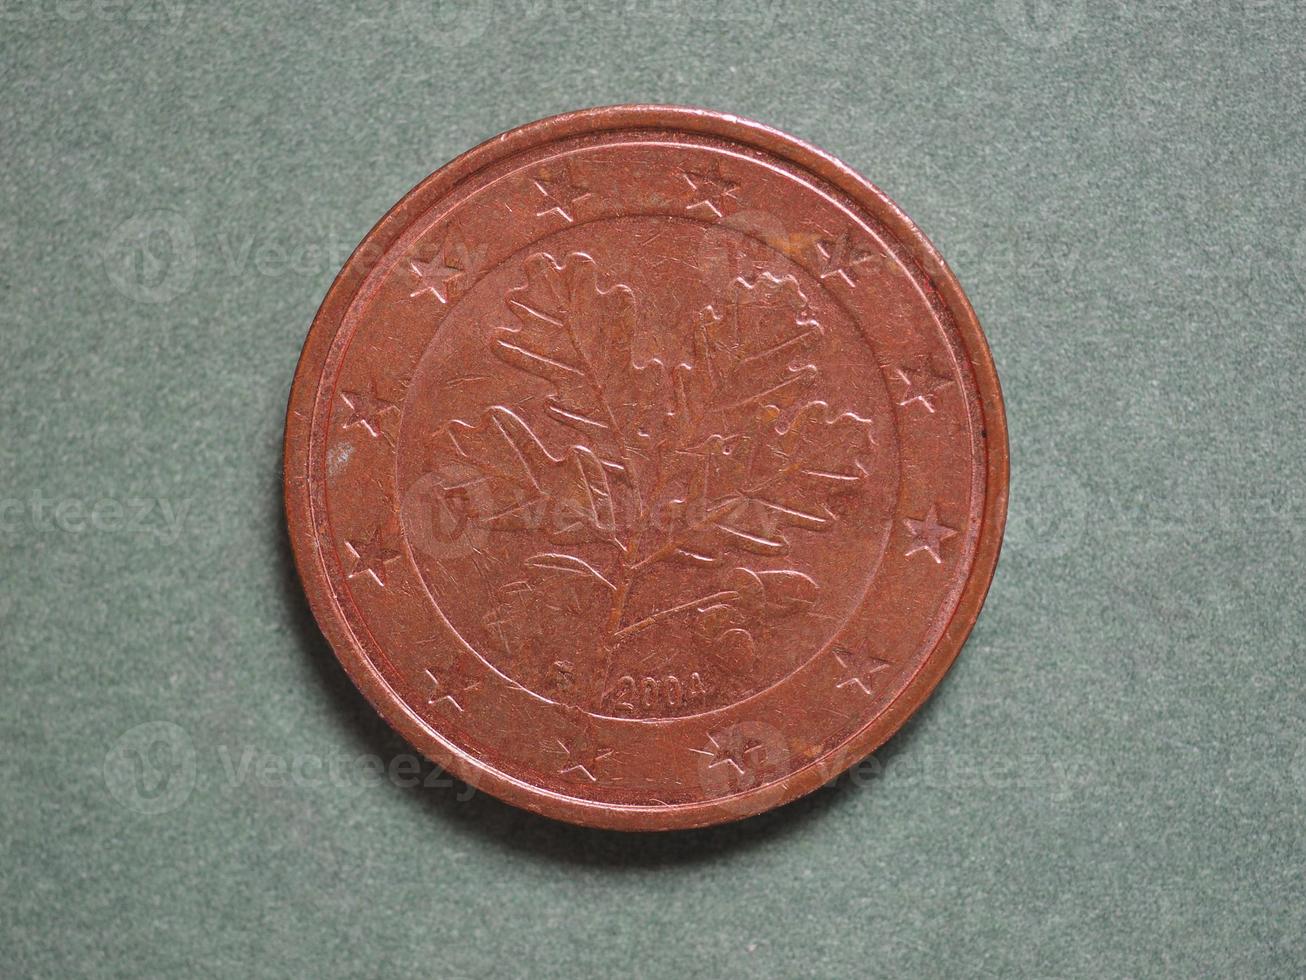 euro eur mynt, valuta för Europeiska unionen eu foto